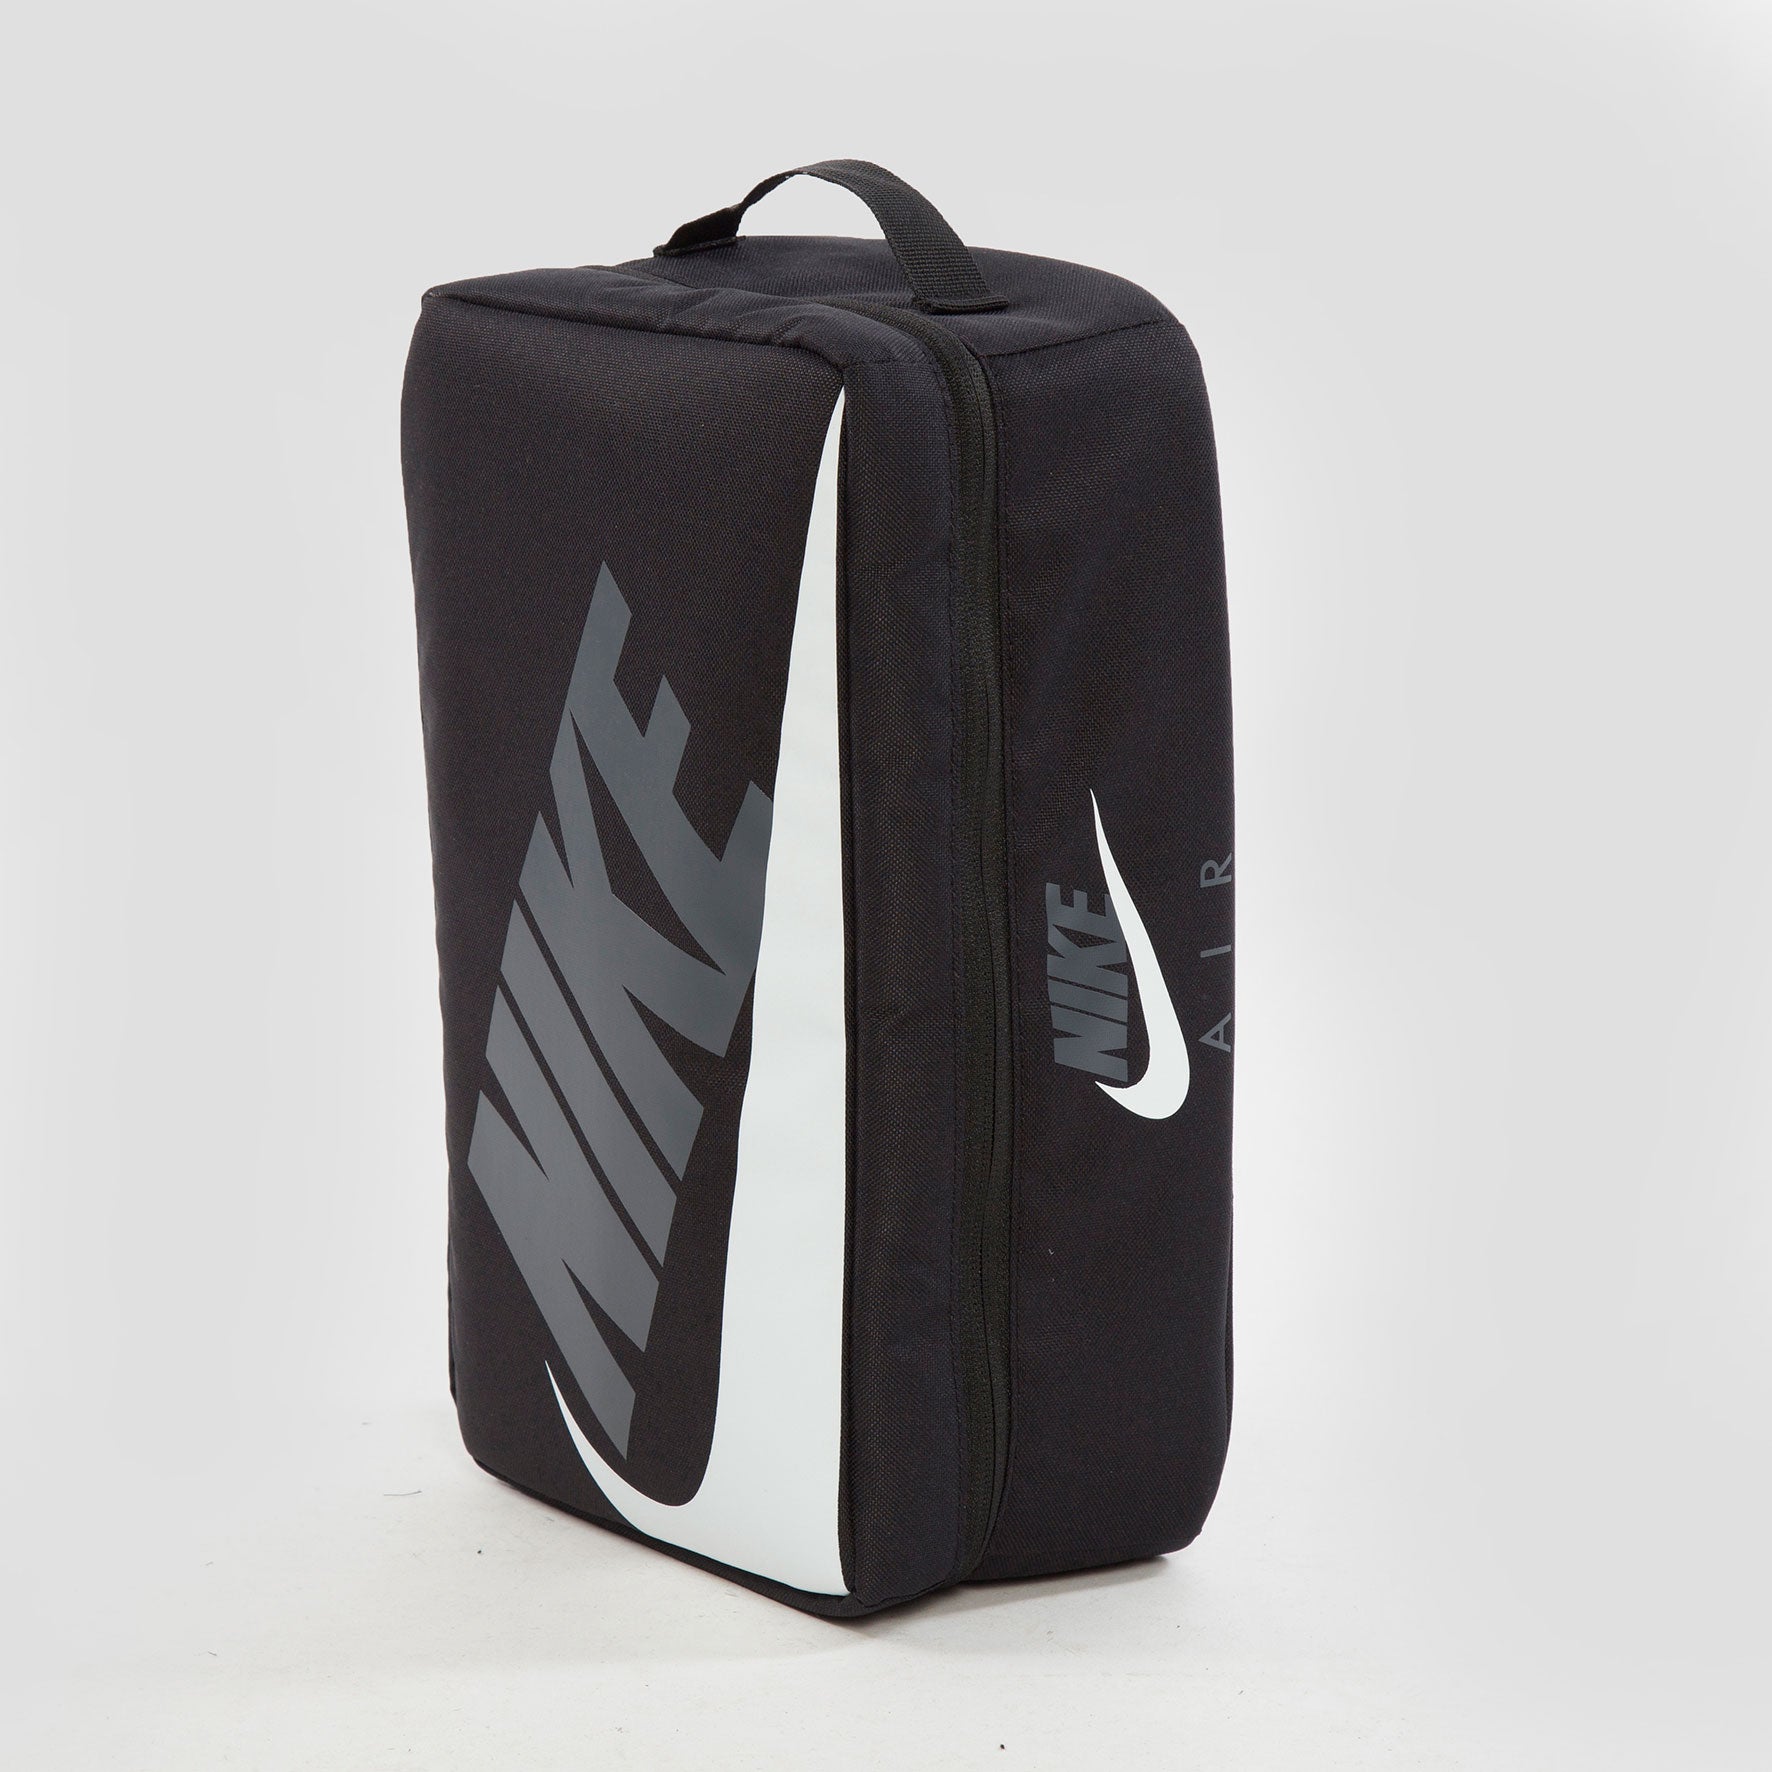 Nike Bolsa Nike Air Shoe Box - CW9266-010 - Colección Unisex